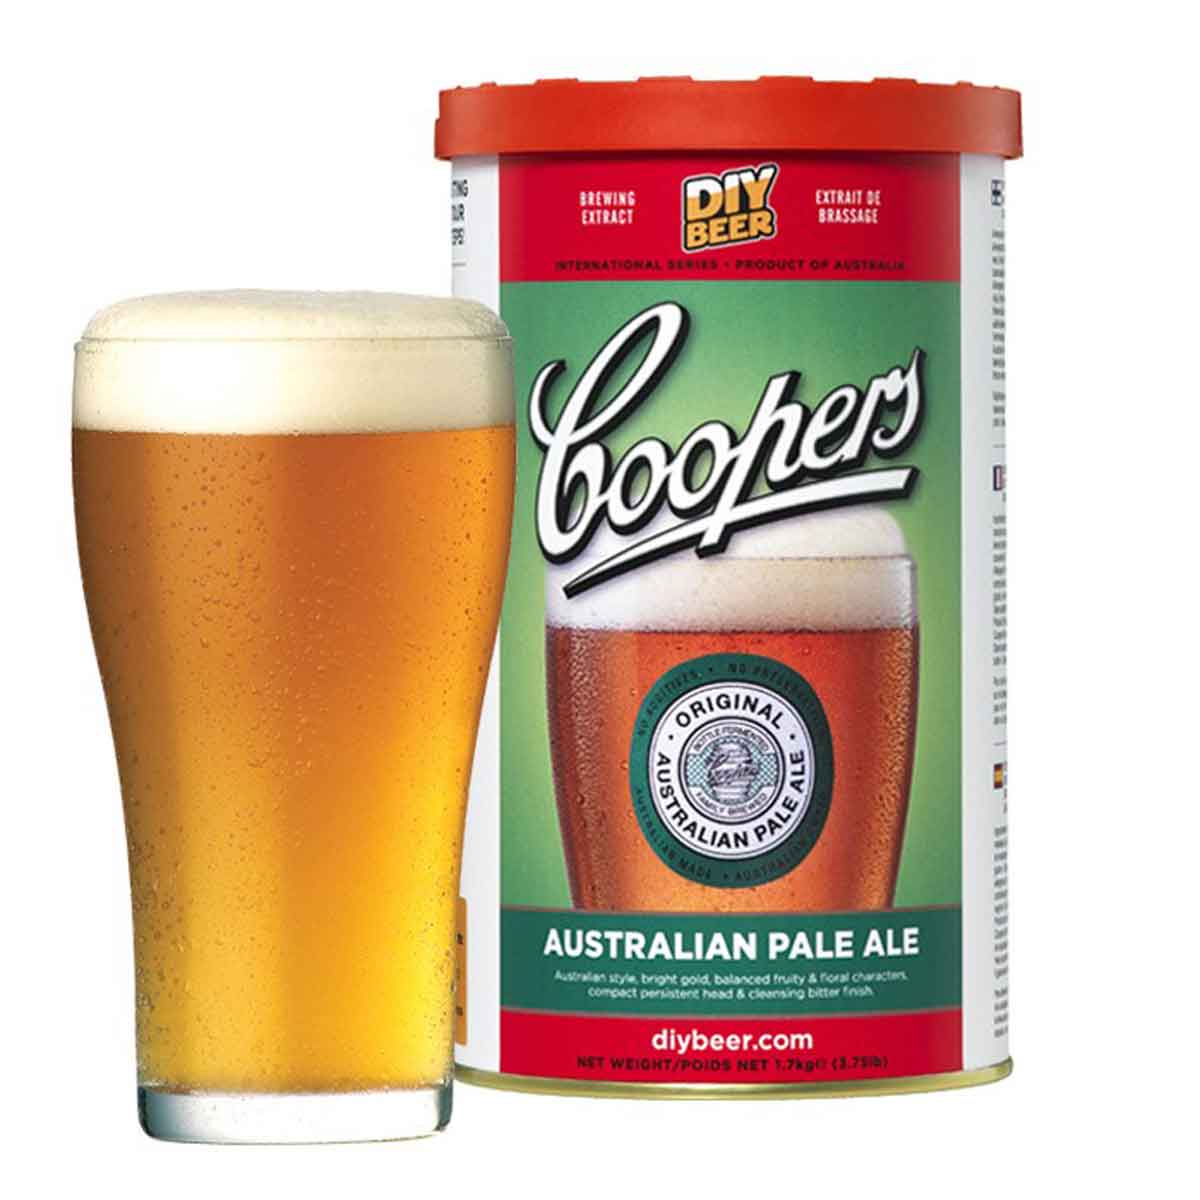 Malto per birra Coopers Australiana Pale Ale